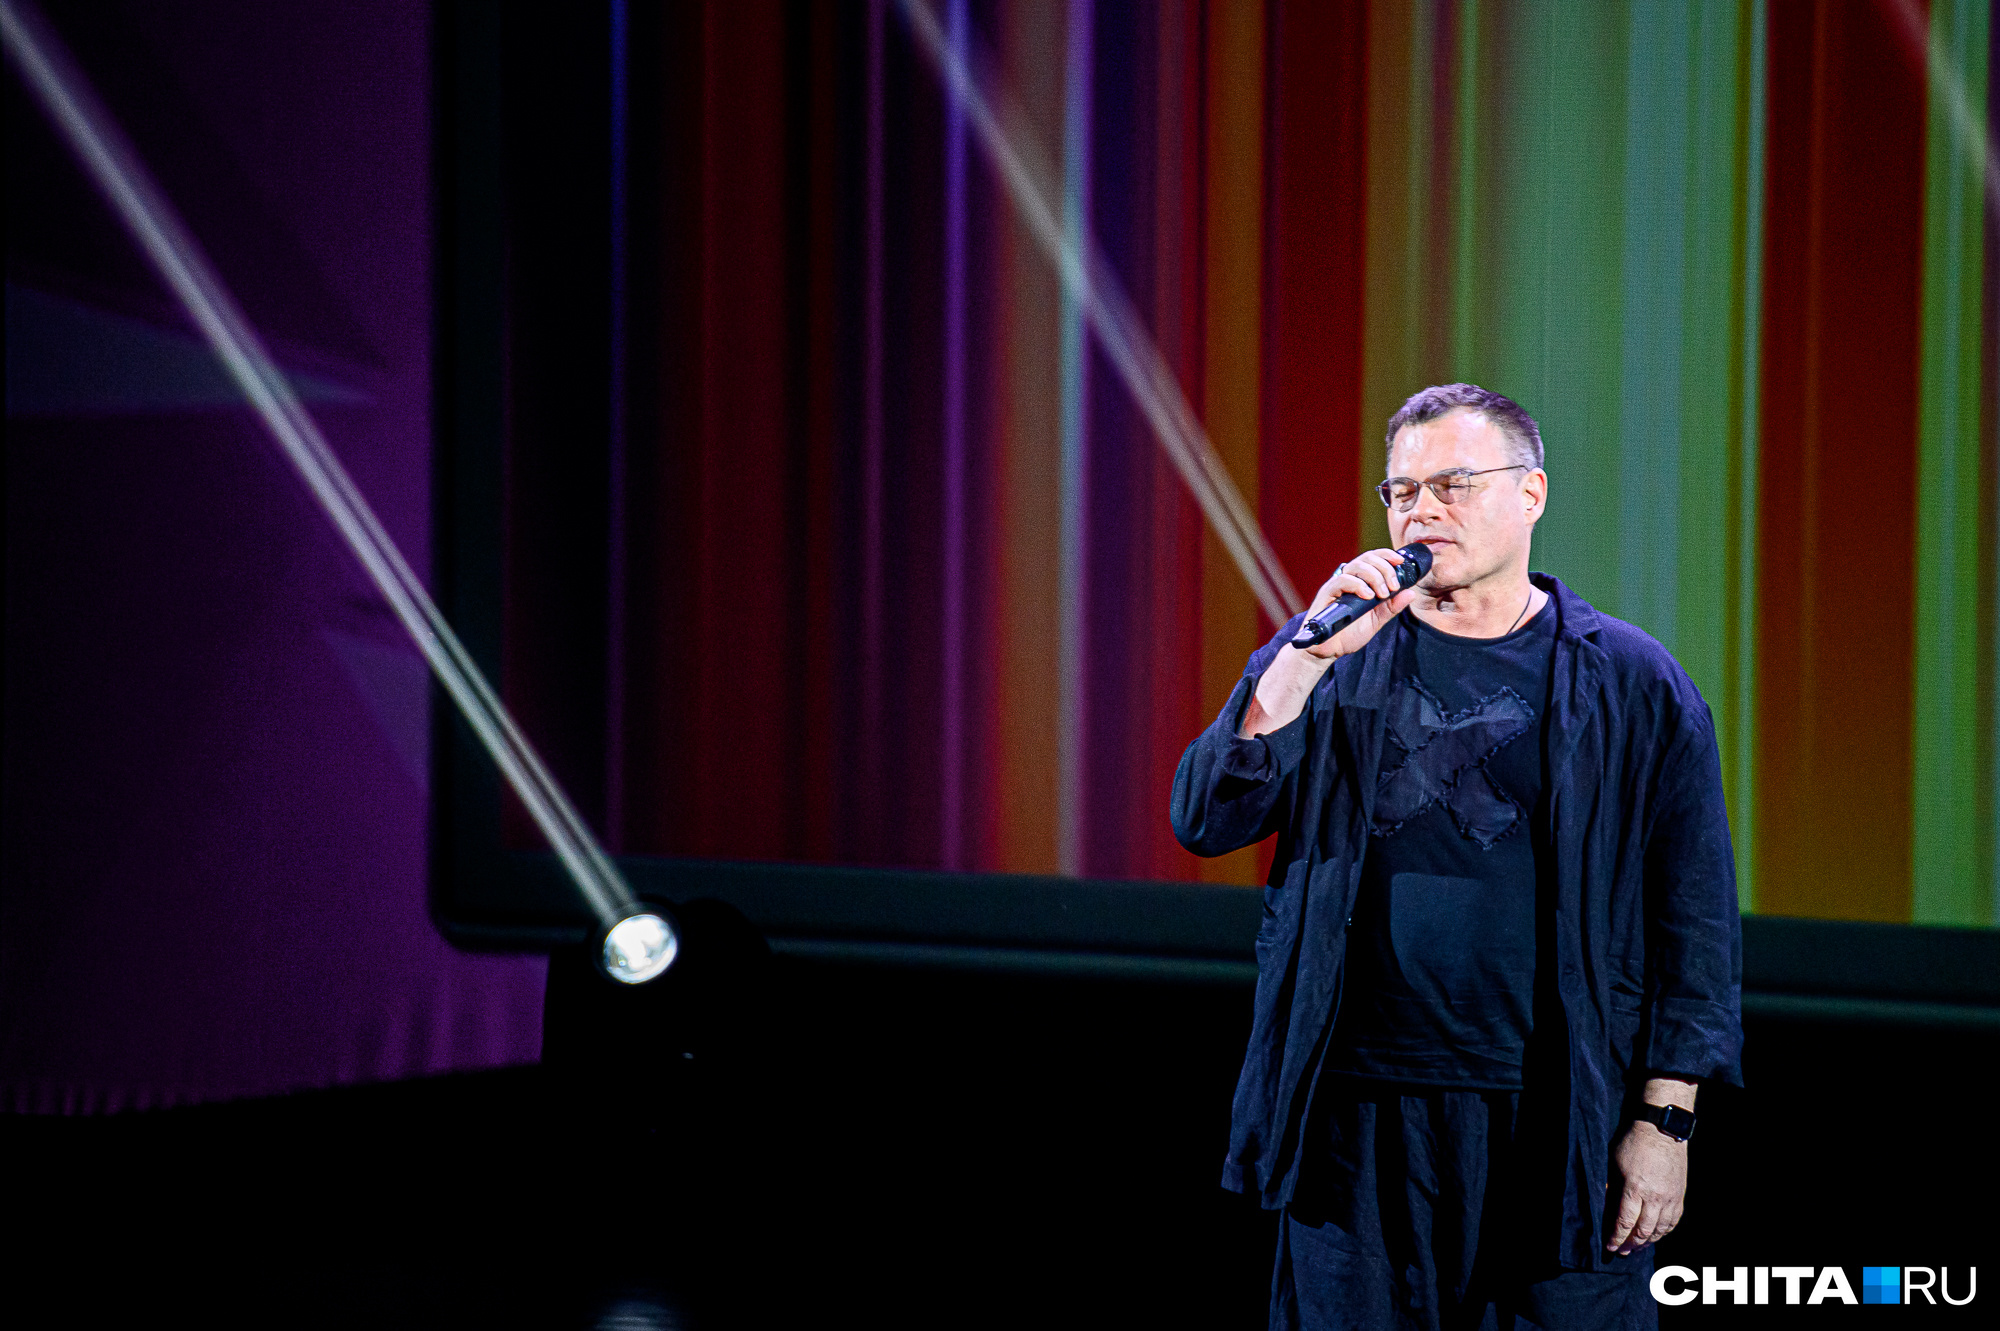 Актер Евгений Дятлов даст концерт в Чите накануне открытия кинофестиваля